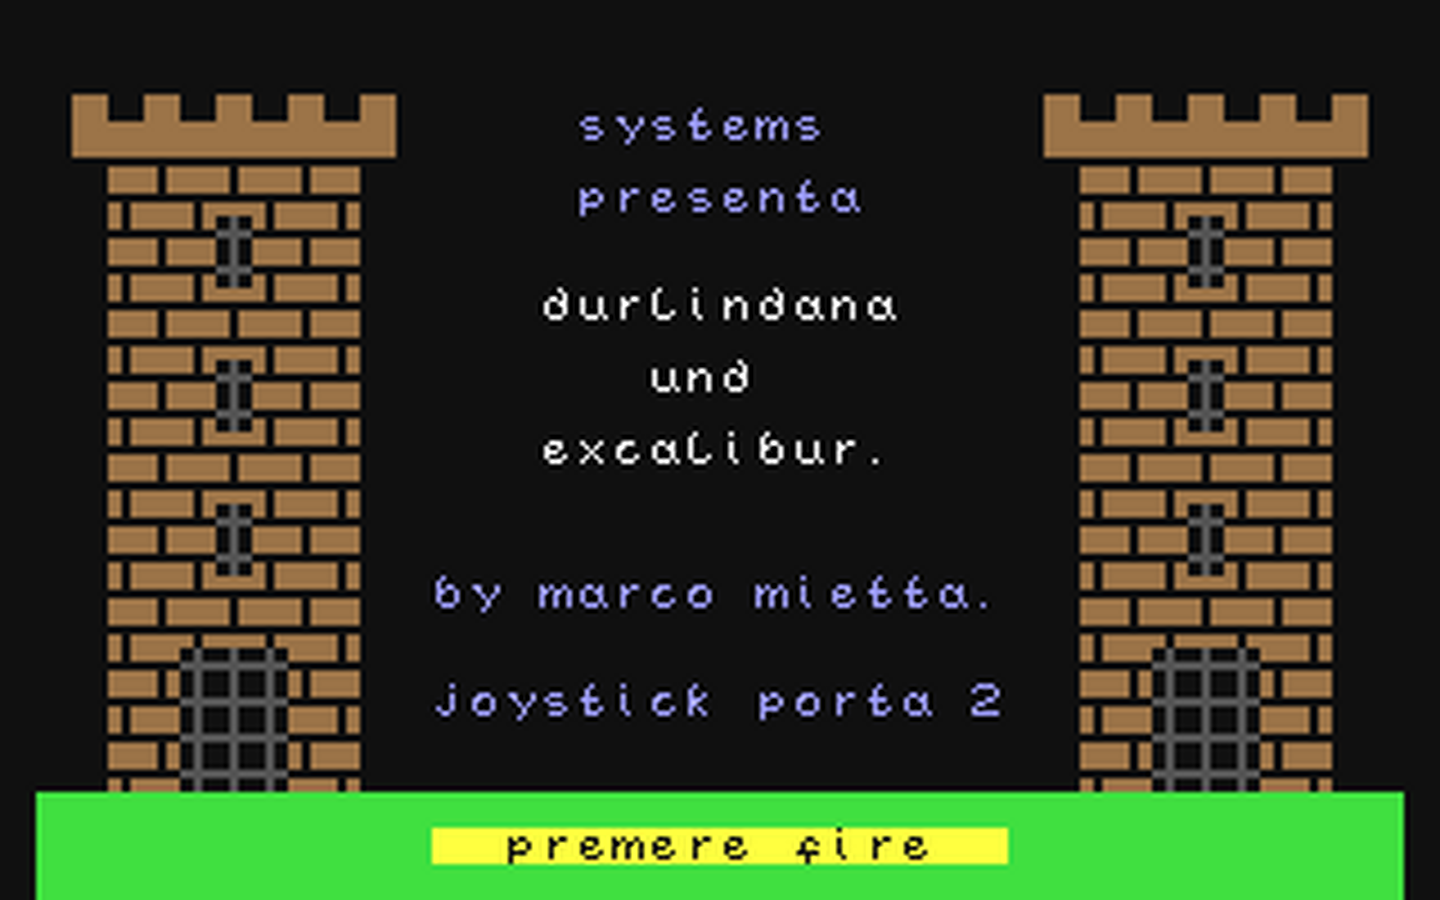 C64 GameBase Durlindana_und_Excalibur Systems_Editoriale_s.r.l./Commodore_64_Club 1988